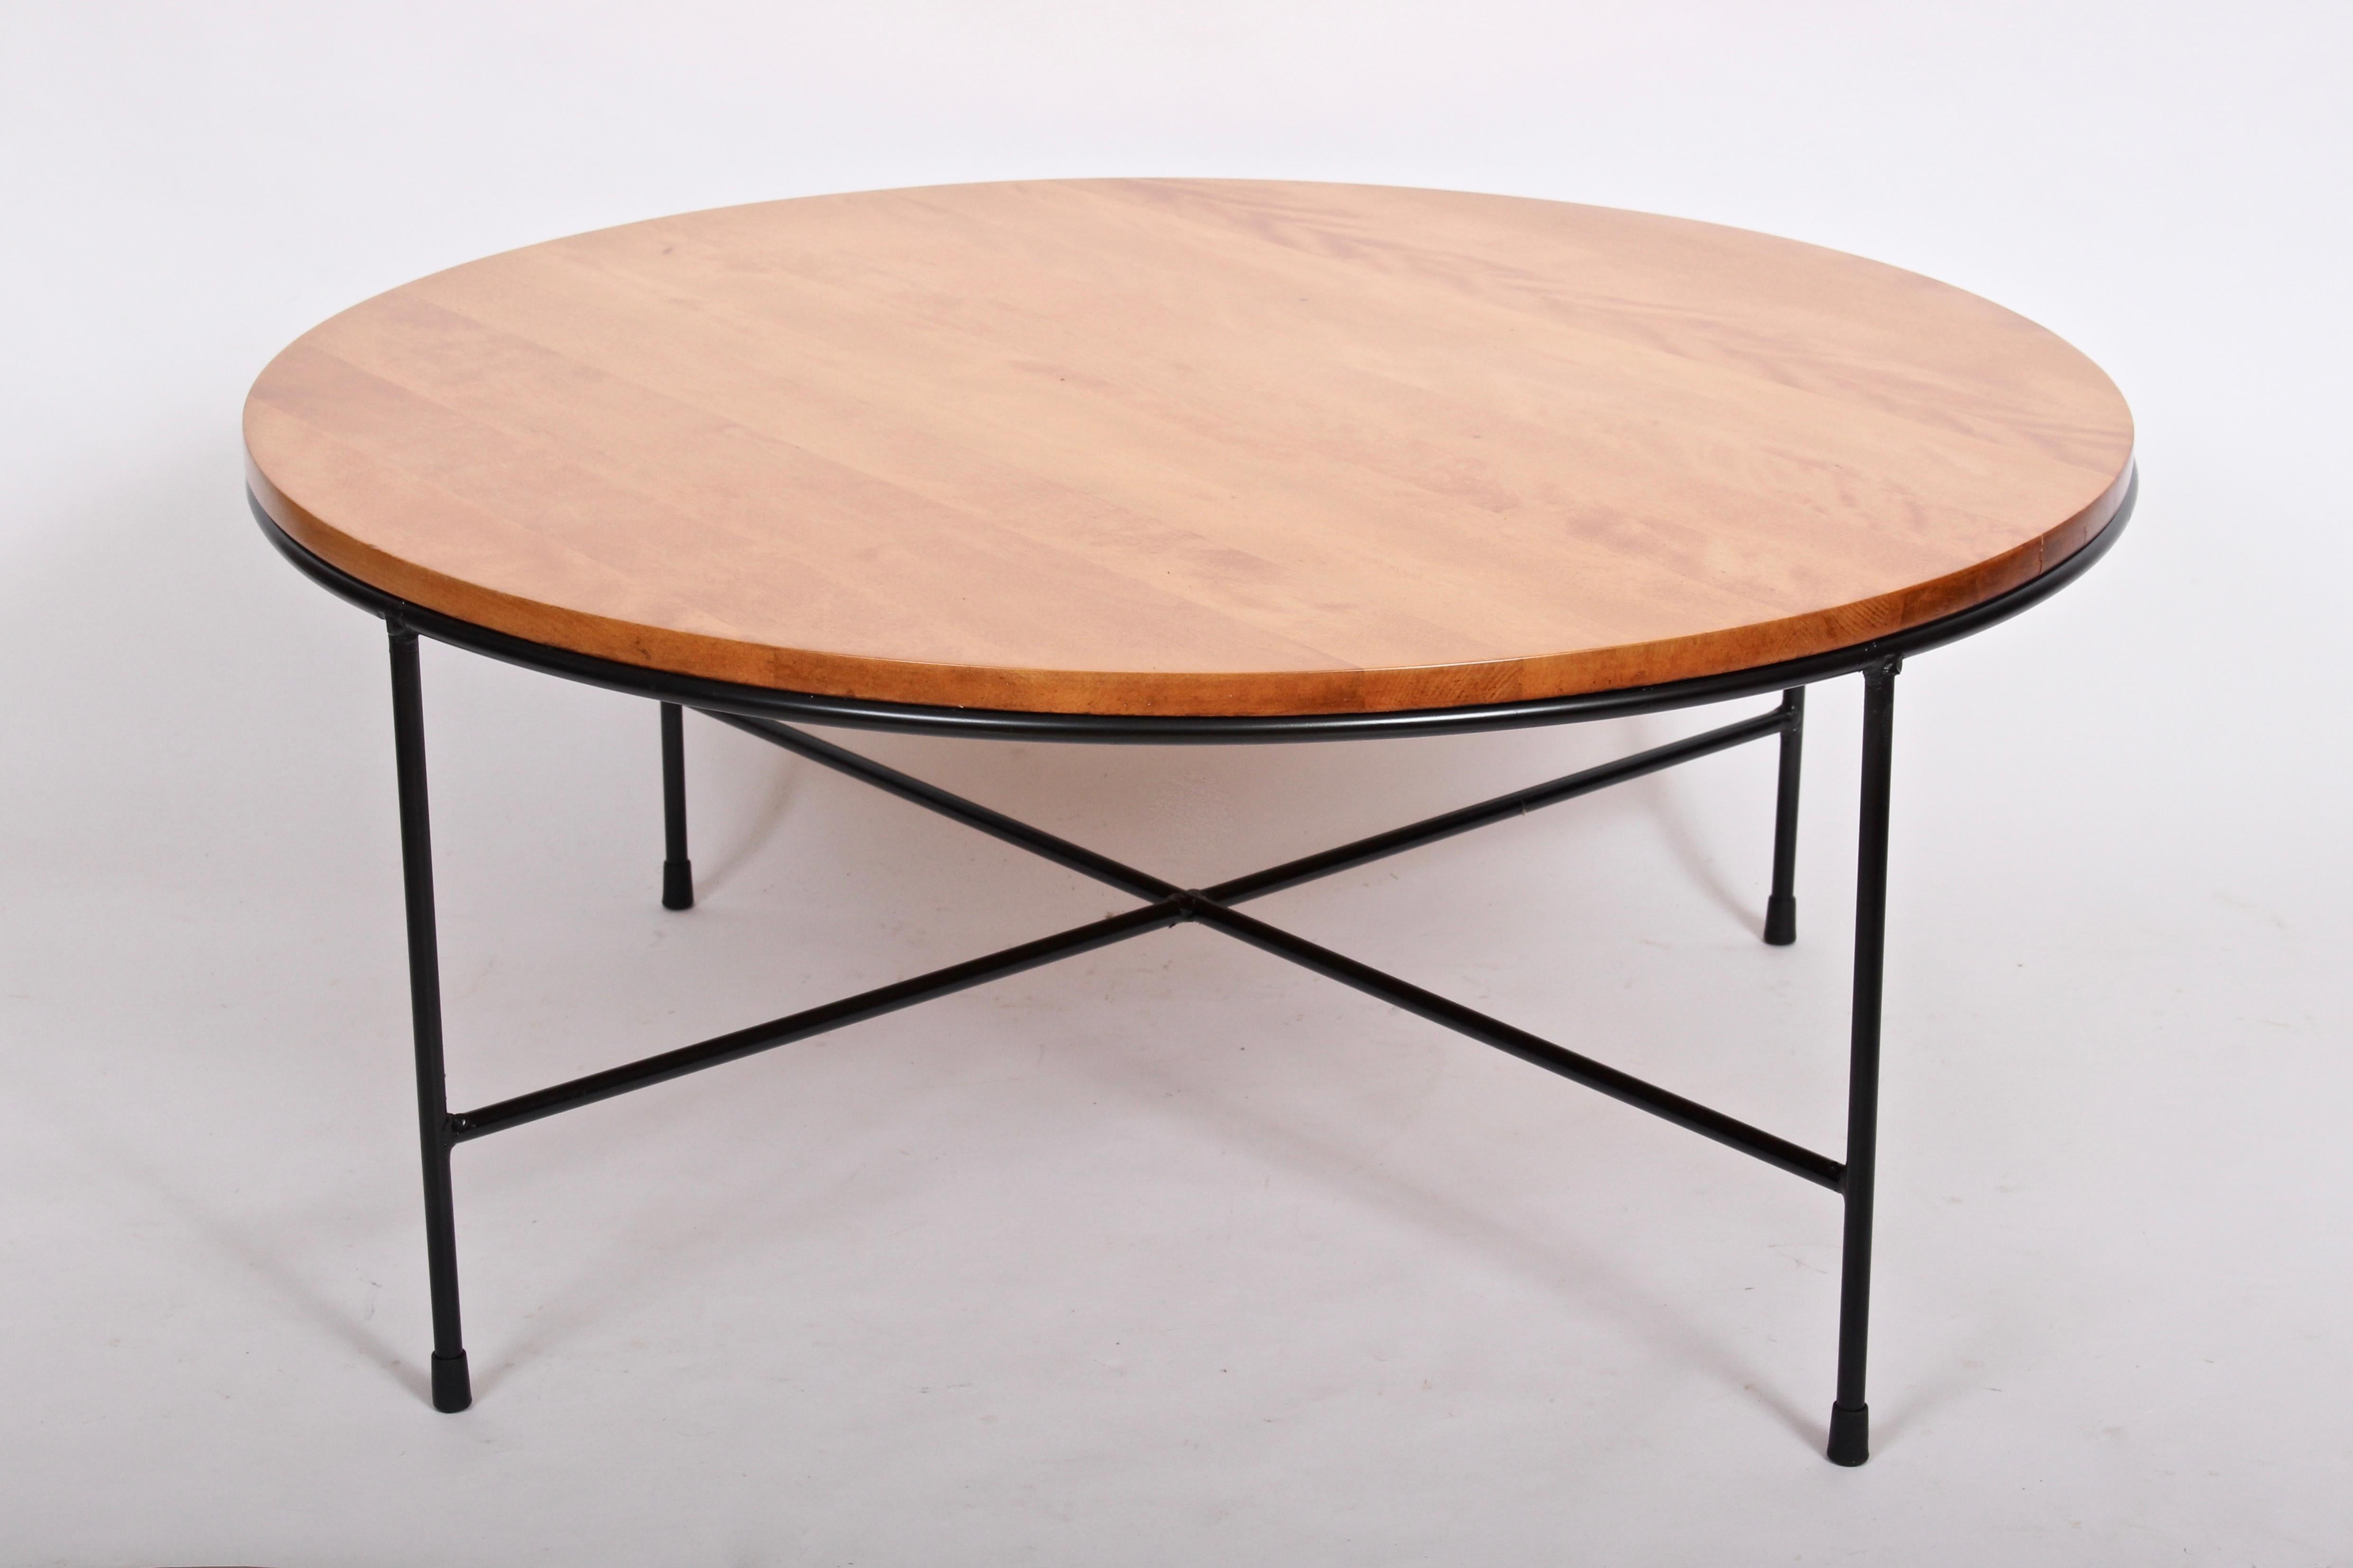 Vintage Paul McCobb Planner Group for Winchendon Model 1580 Maple & Iron Coffee Table. Elle est composée d'un cadre en fer forgé robuste, équilibré et émaillé noir, inséré dans une surface circulaire en bois massif d'érable flammé au fini naturel,